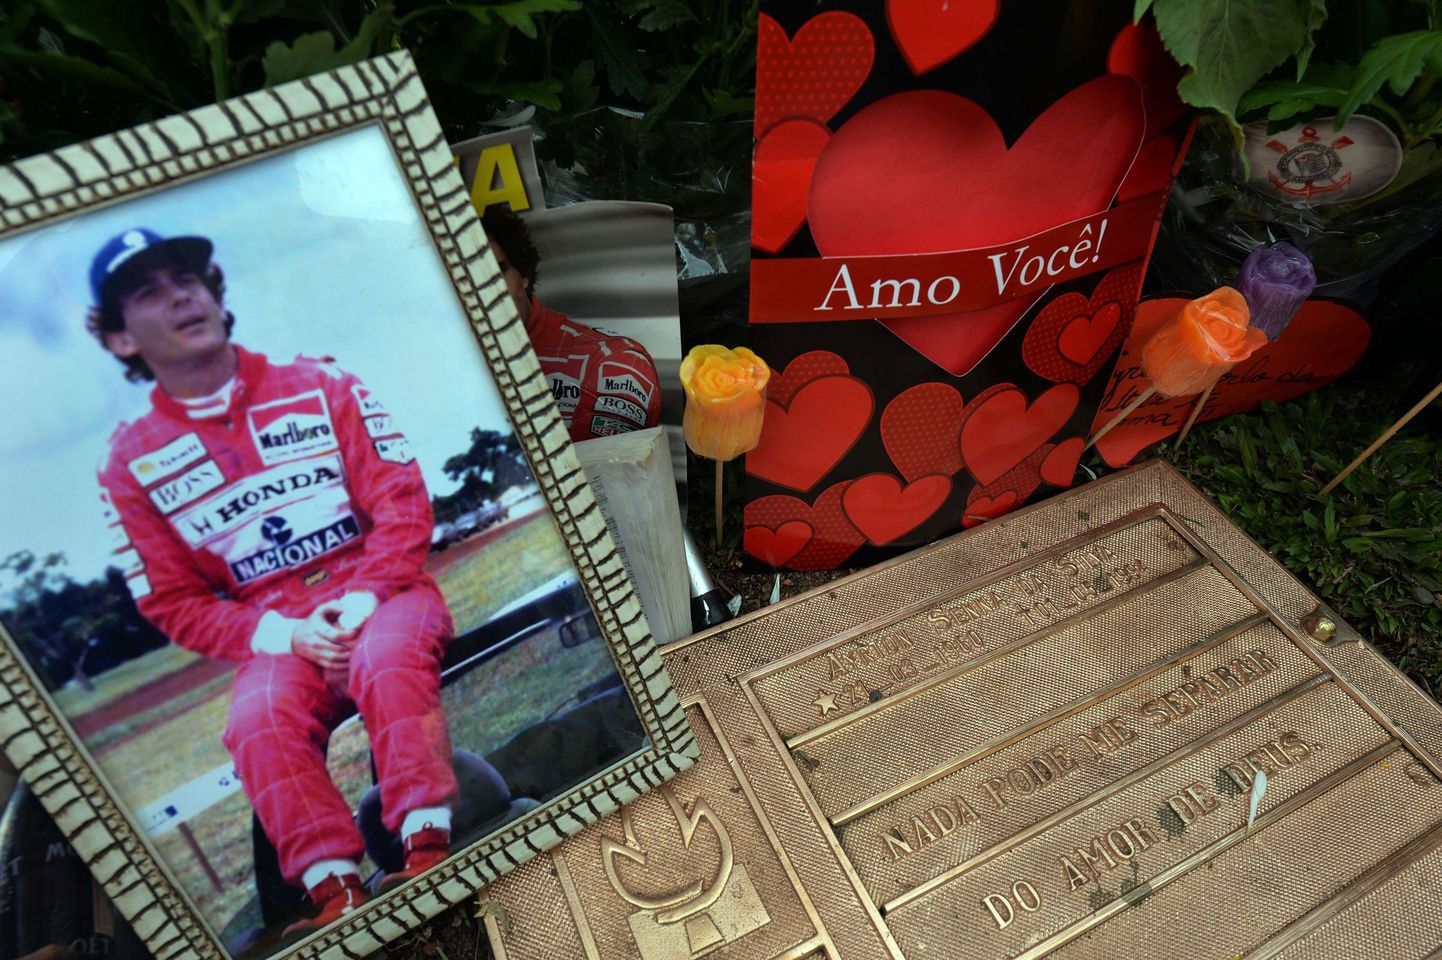 Ayrton Senna hauale viiakse siiani tihti lilli